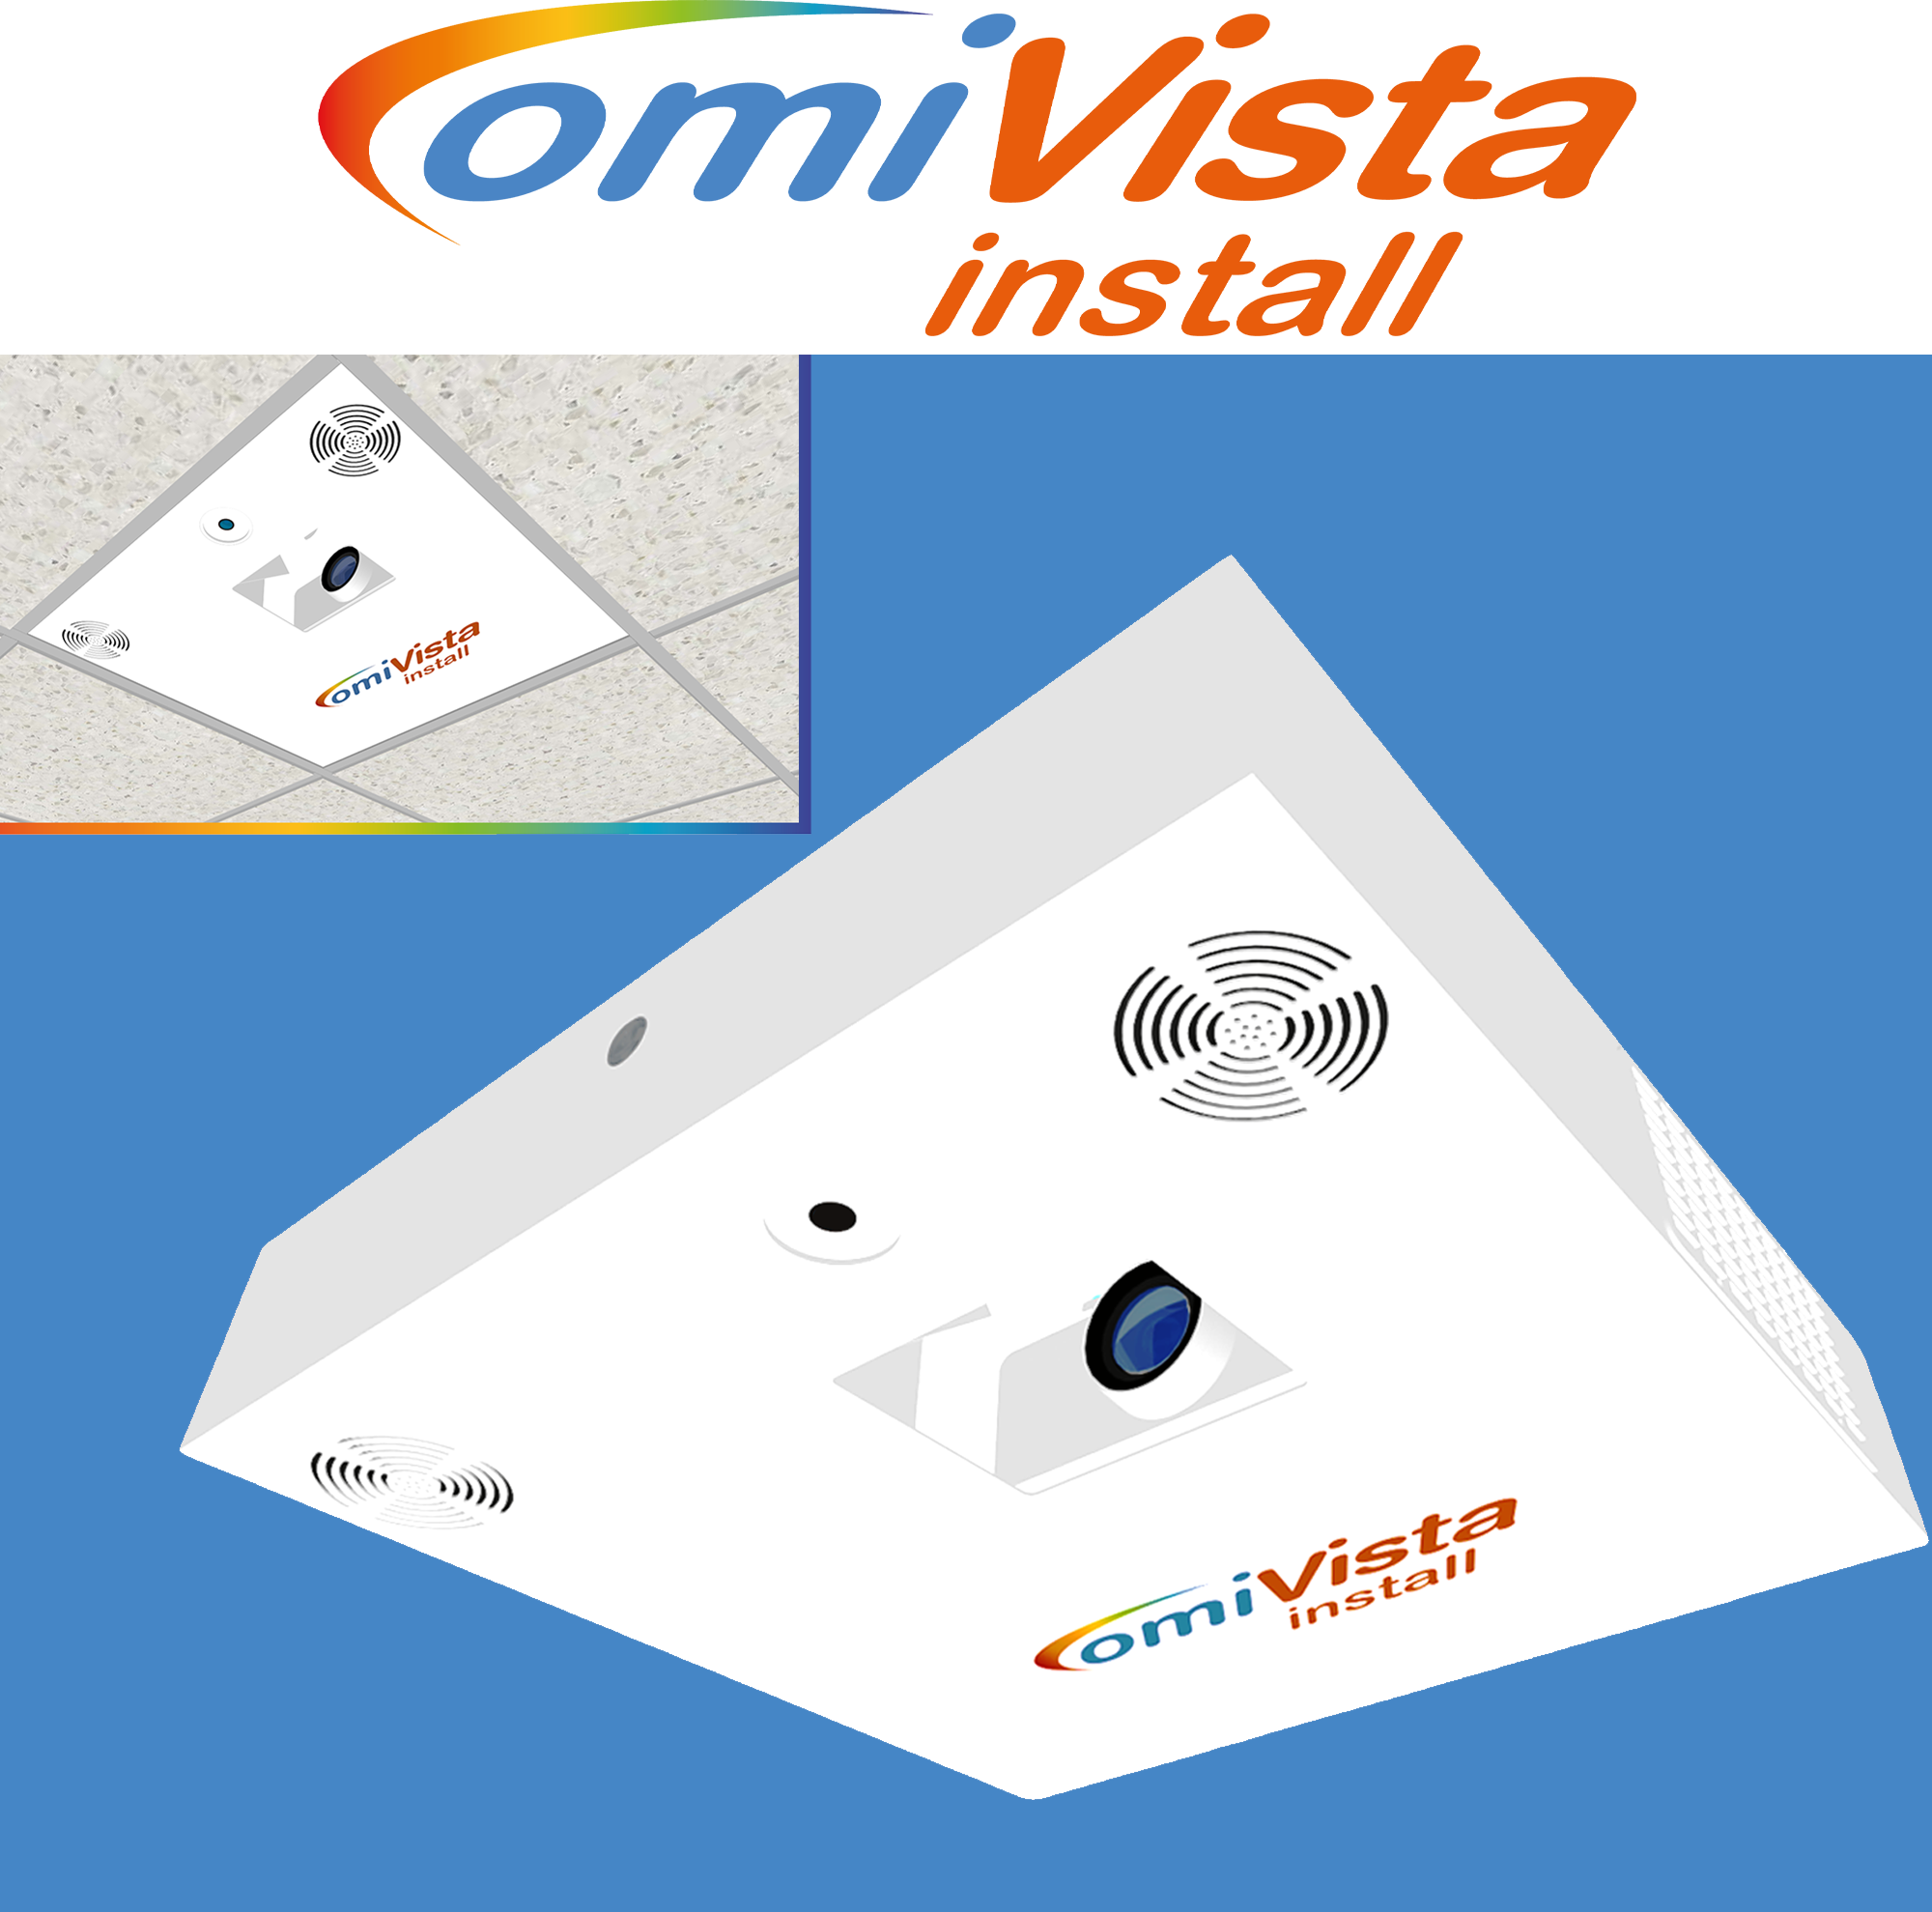 fixed omiVista install sensory light projector system